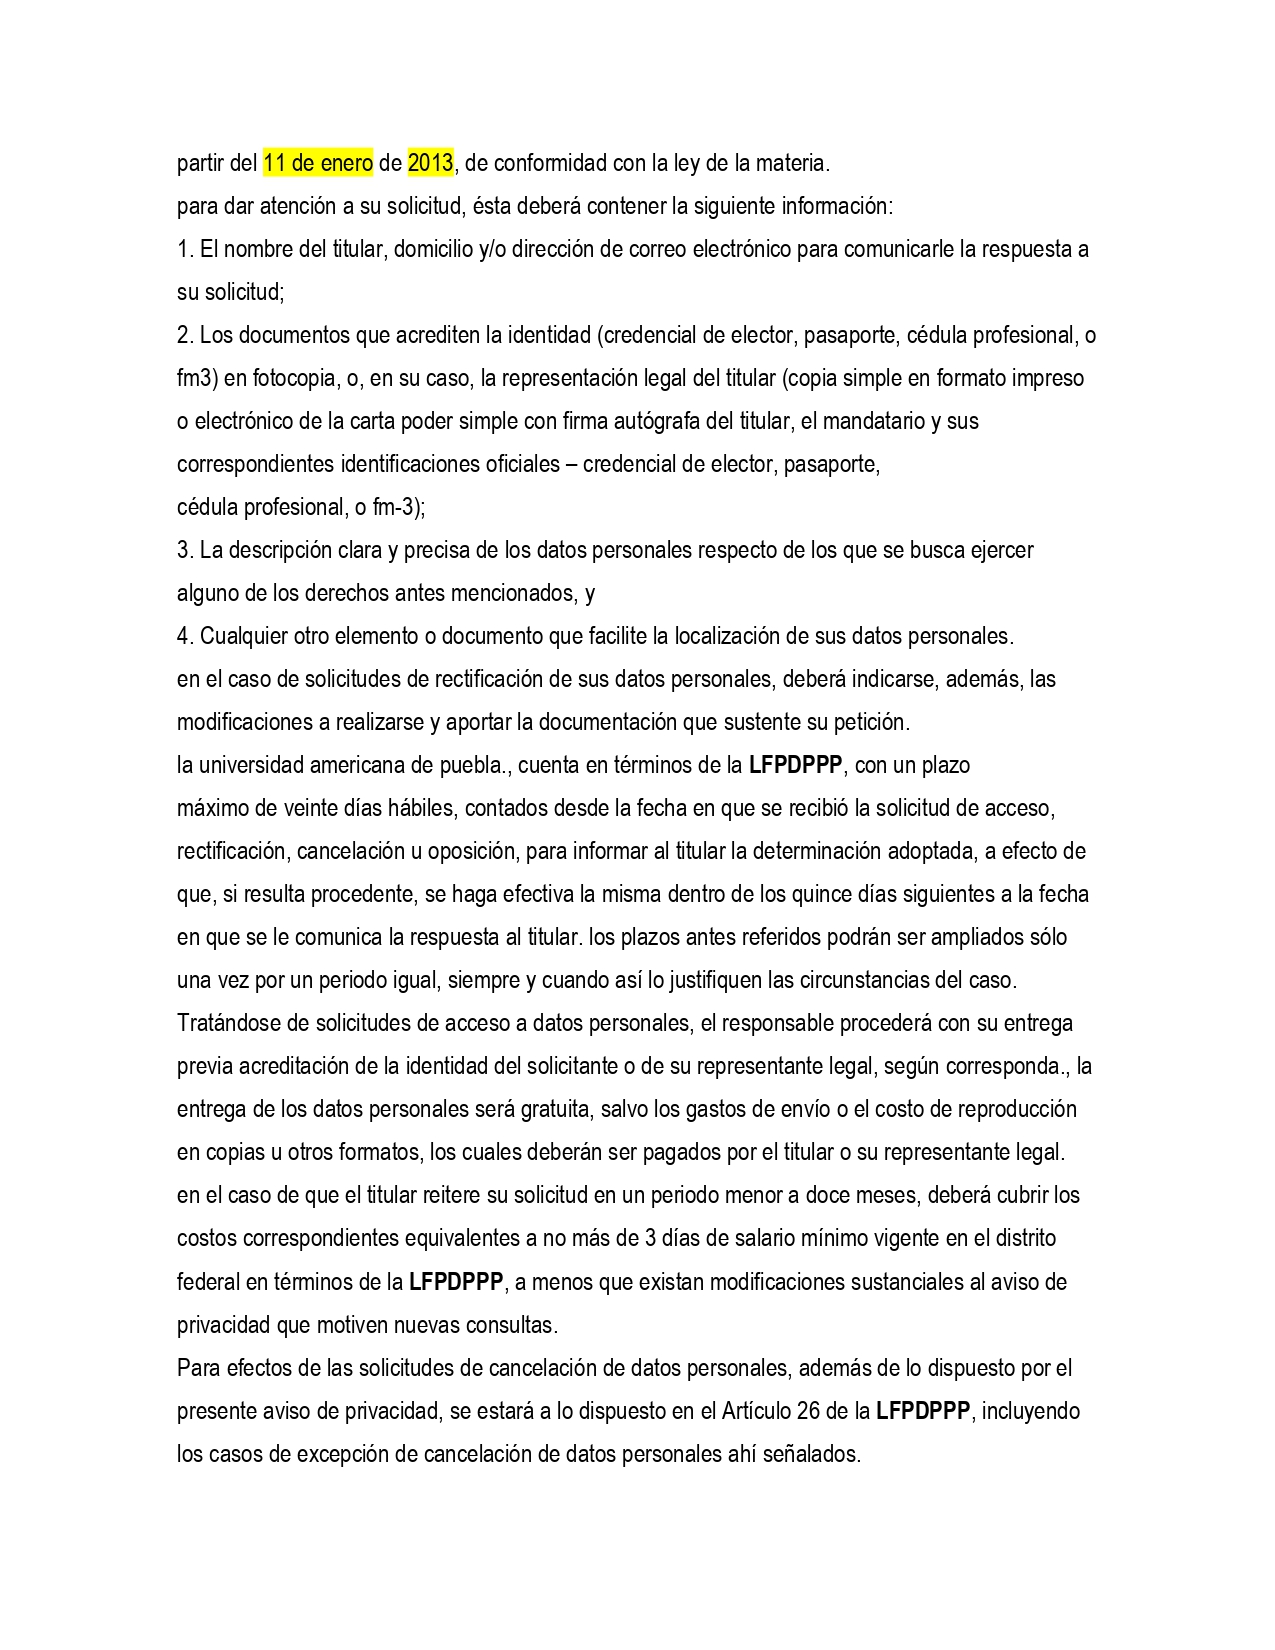 POLITICA DE PRIVACIDAD UAMP_page-0008